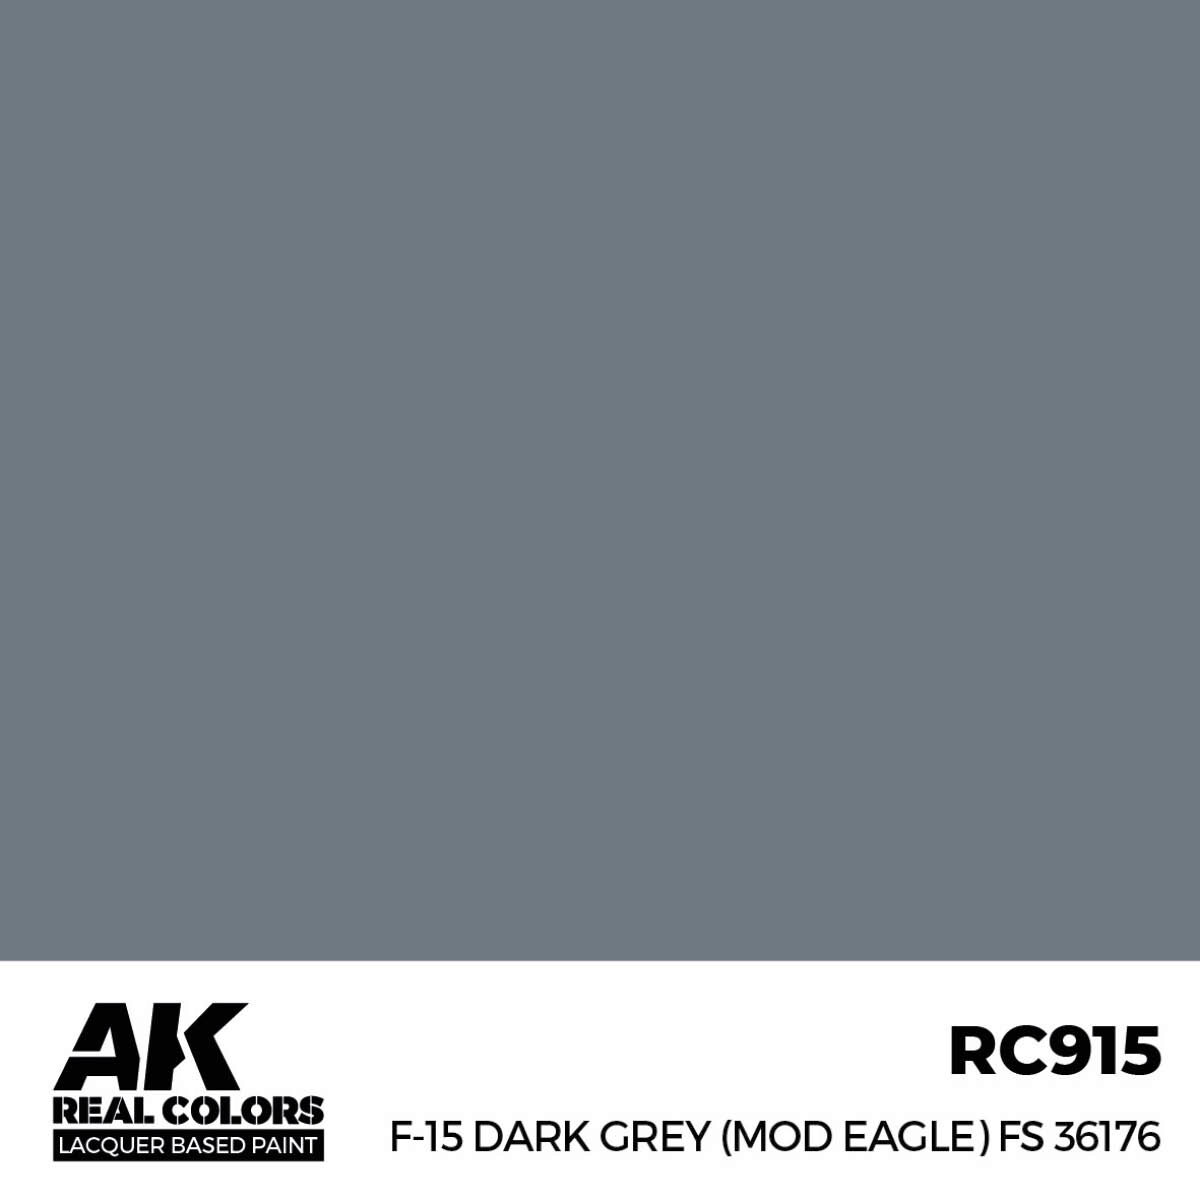 AK RC915 Real Colors F-15 Dark Grey (MOD EAGLE) FS 36176 17 ml.